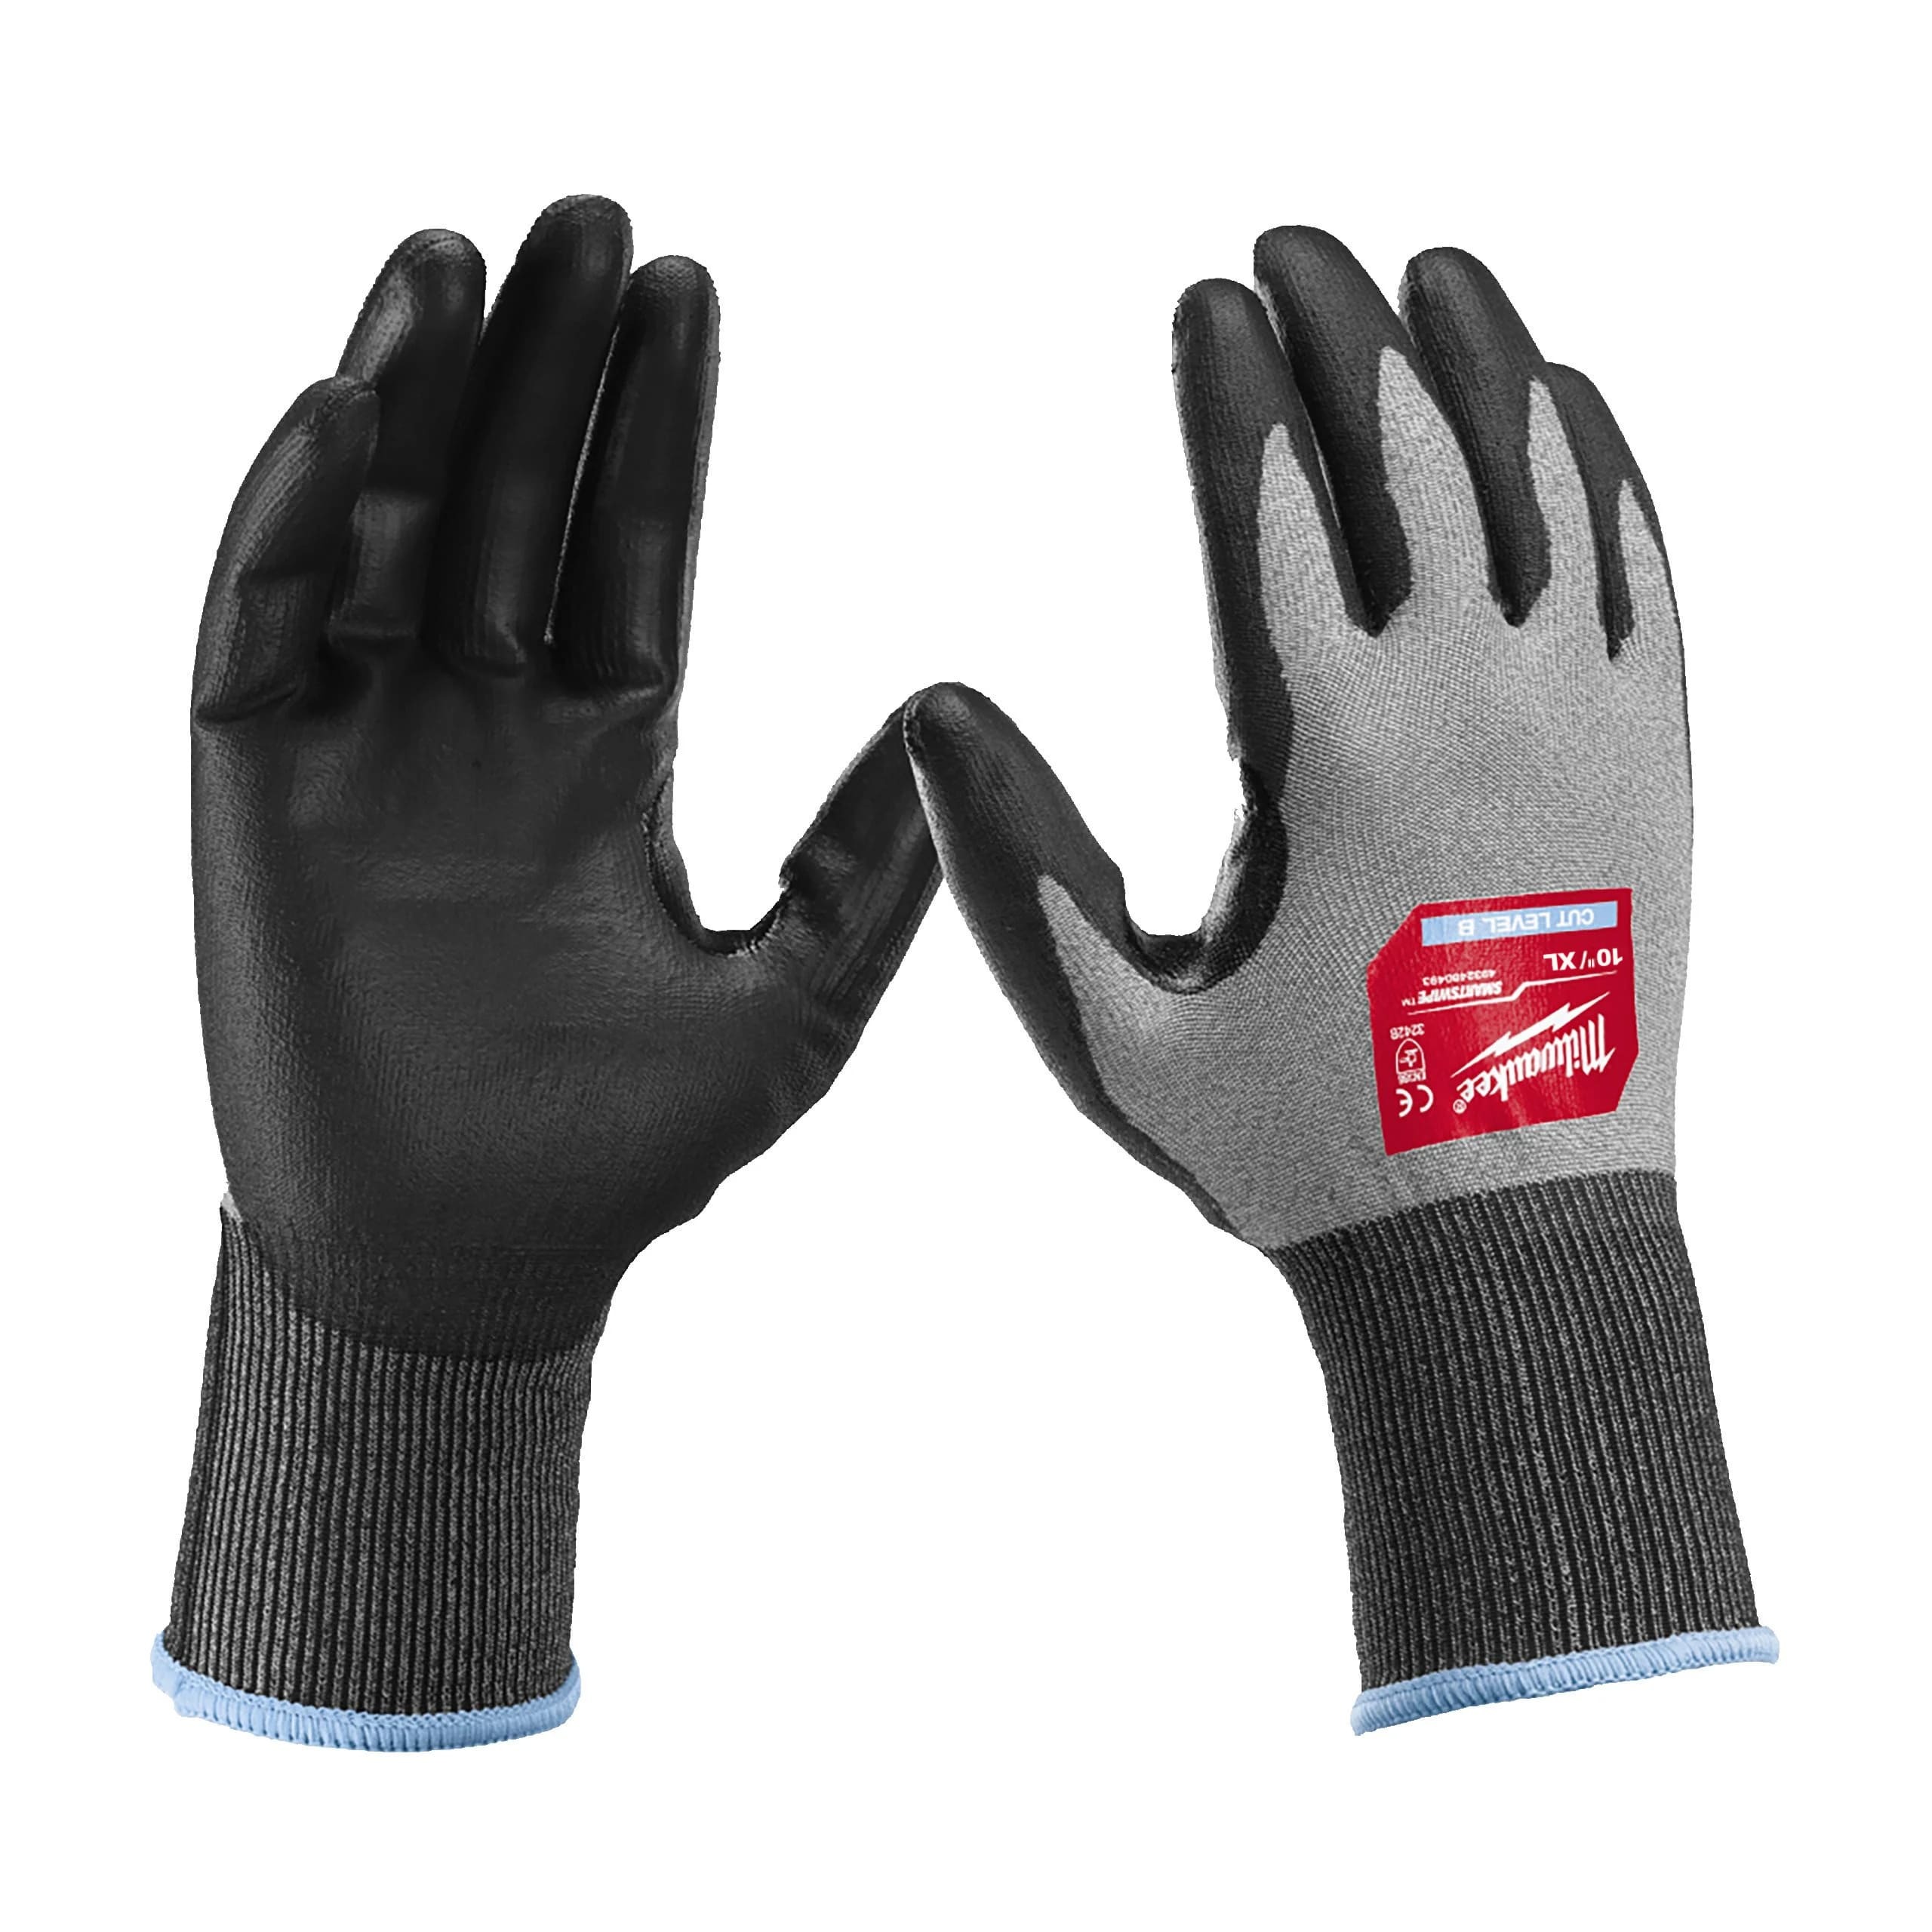 Перчатки защитные Milwaukee Hi-Dex Cut Level 2/B, размер XL/10, 4932480494 защитные перчатки milwaukee